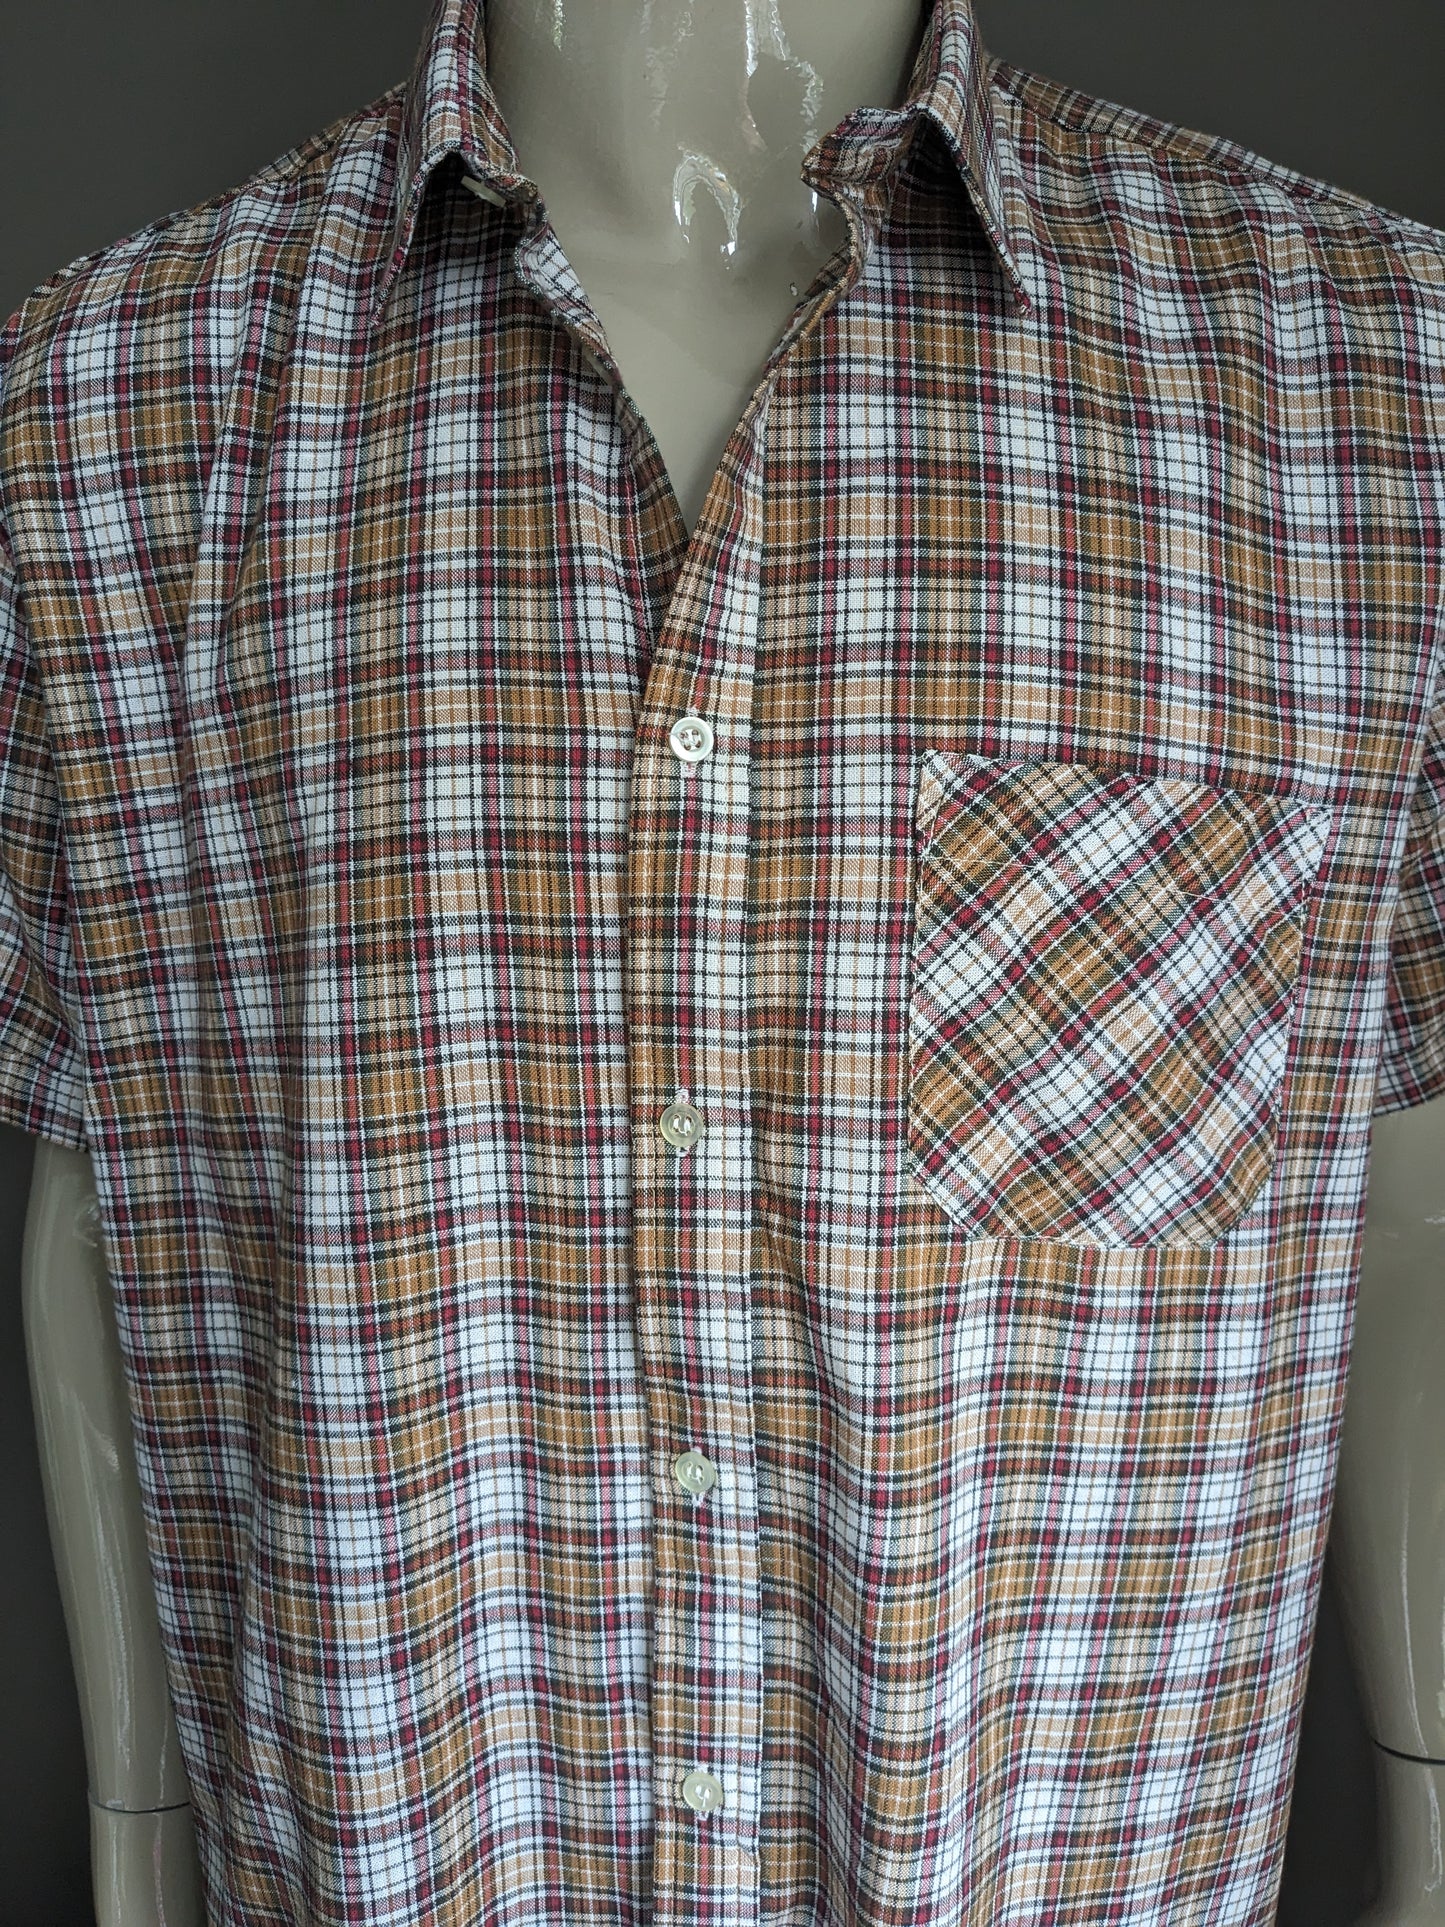 Shelt de chemise vintage des années 70 à manches courtes. Rouge vert brun vérifié. Taille xxl / 2xl.